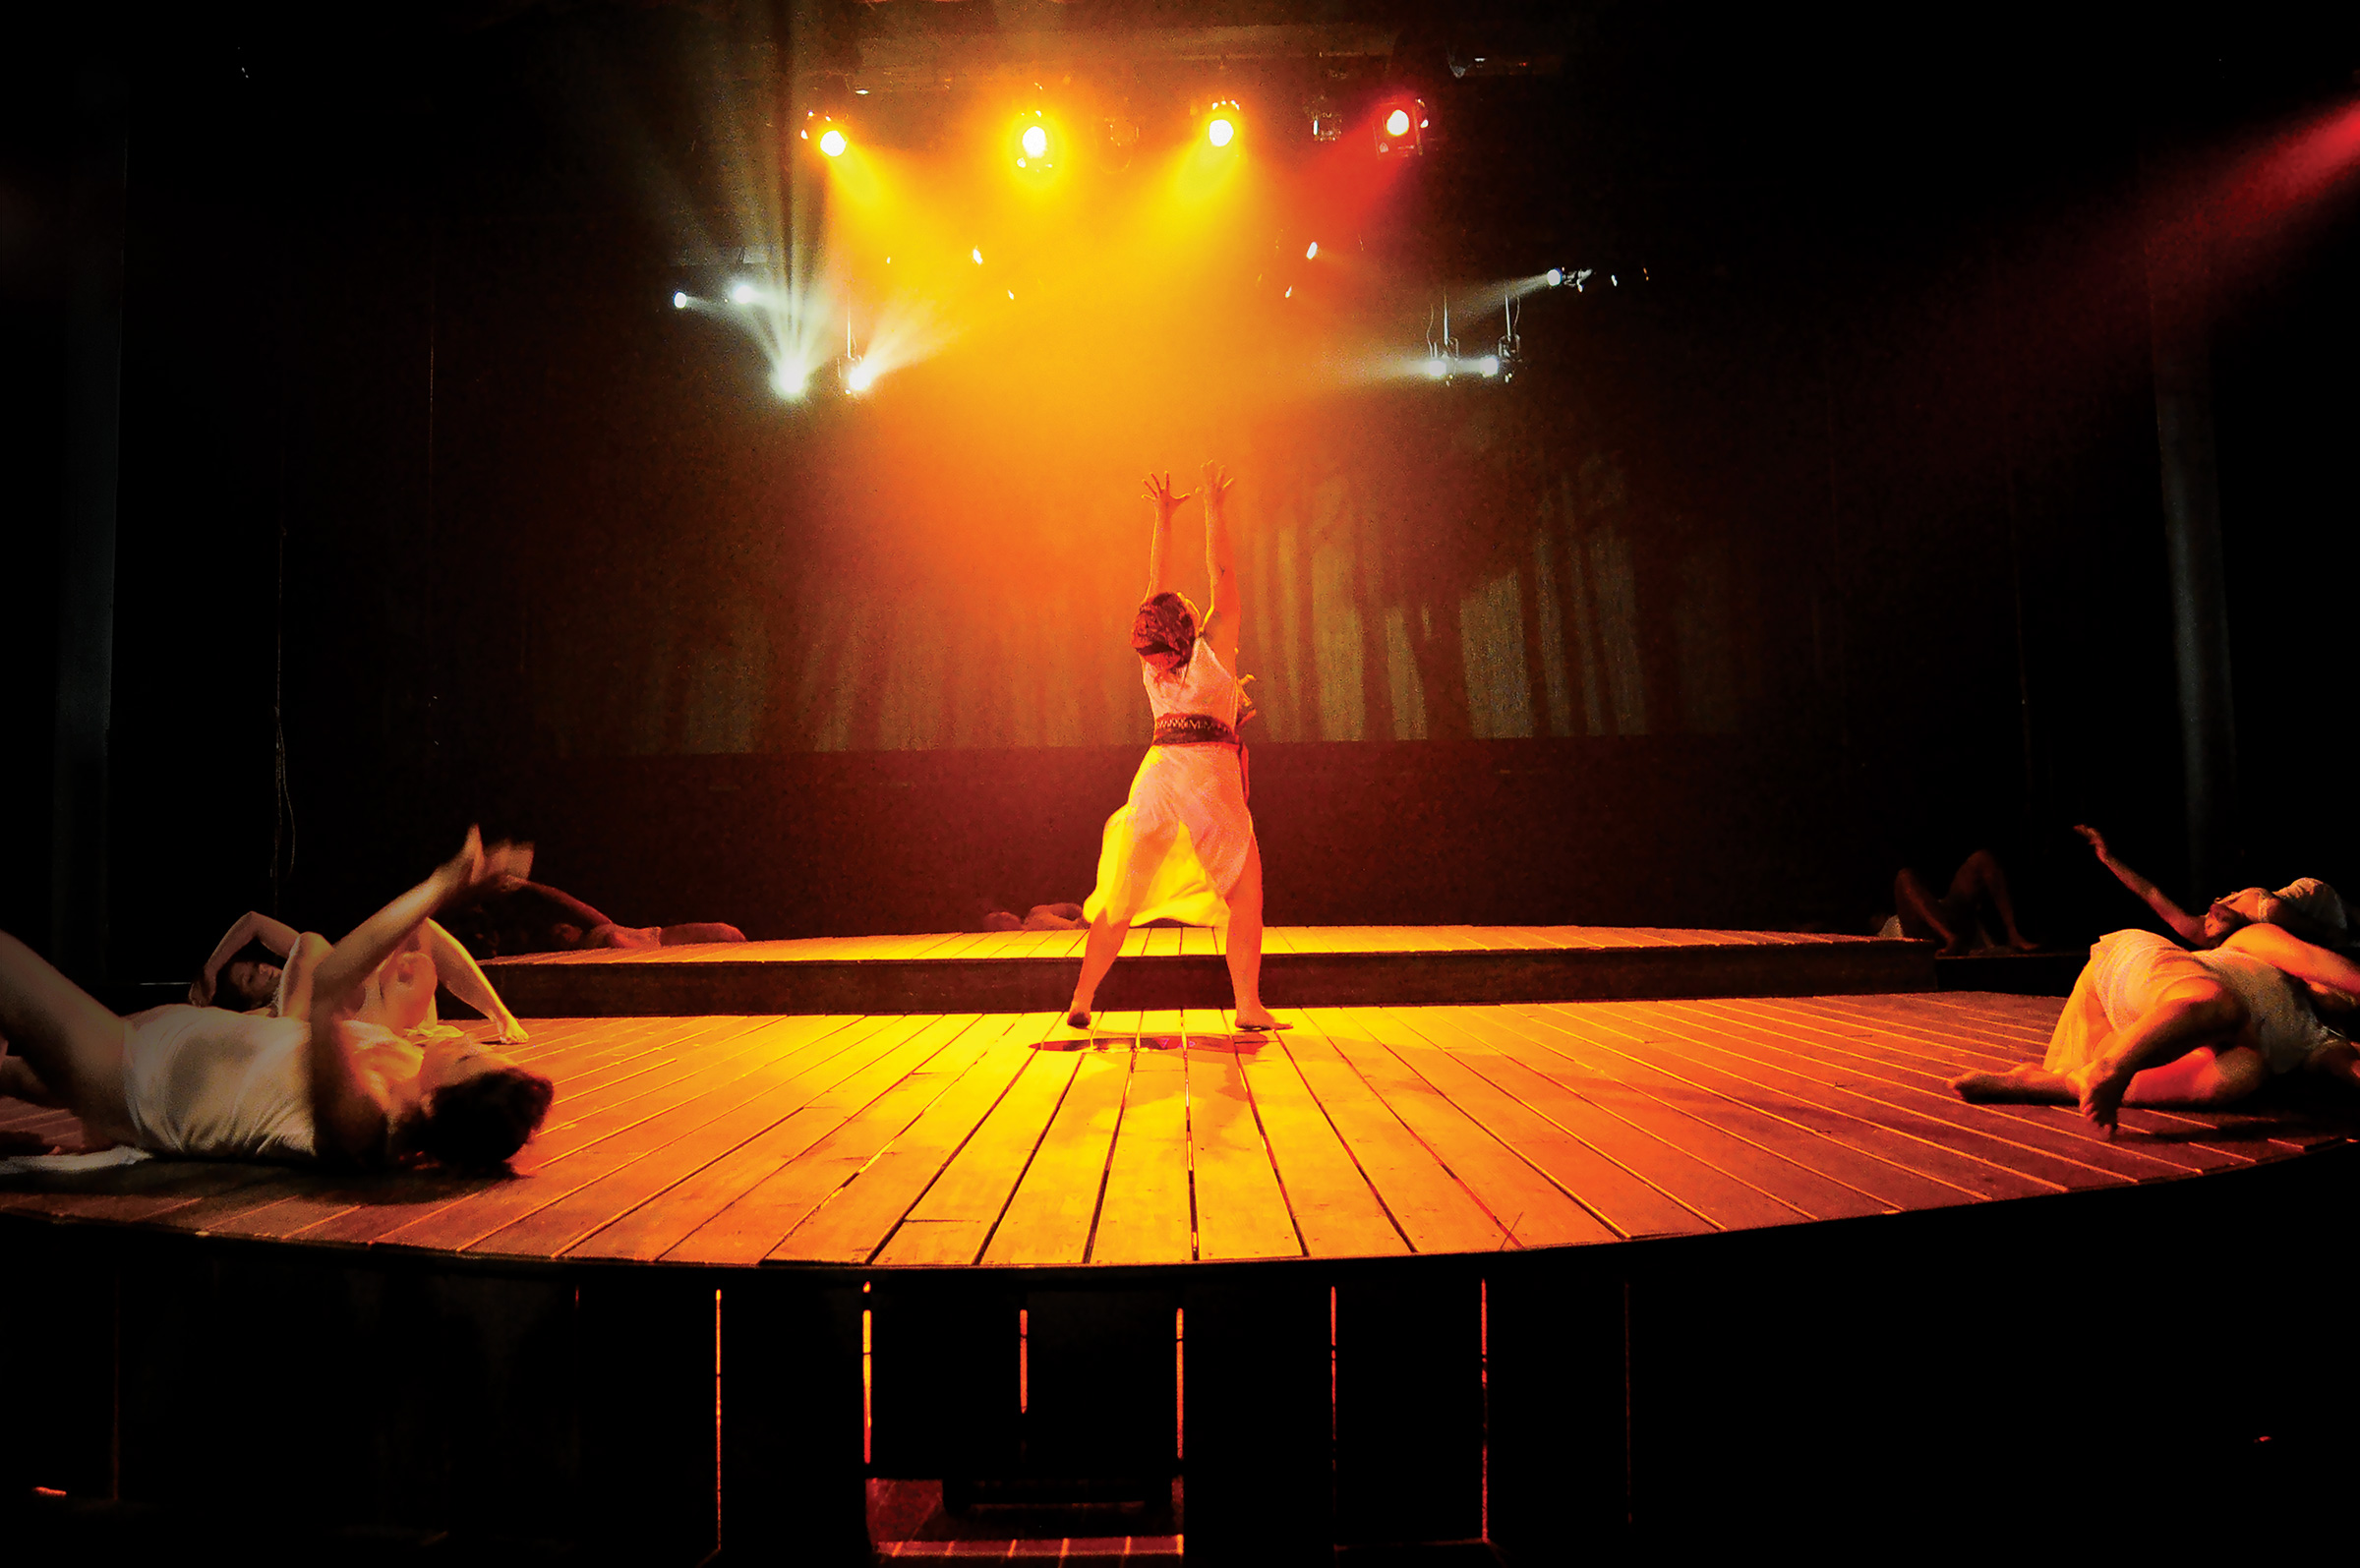 Dancer on stage